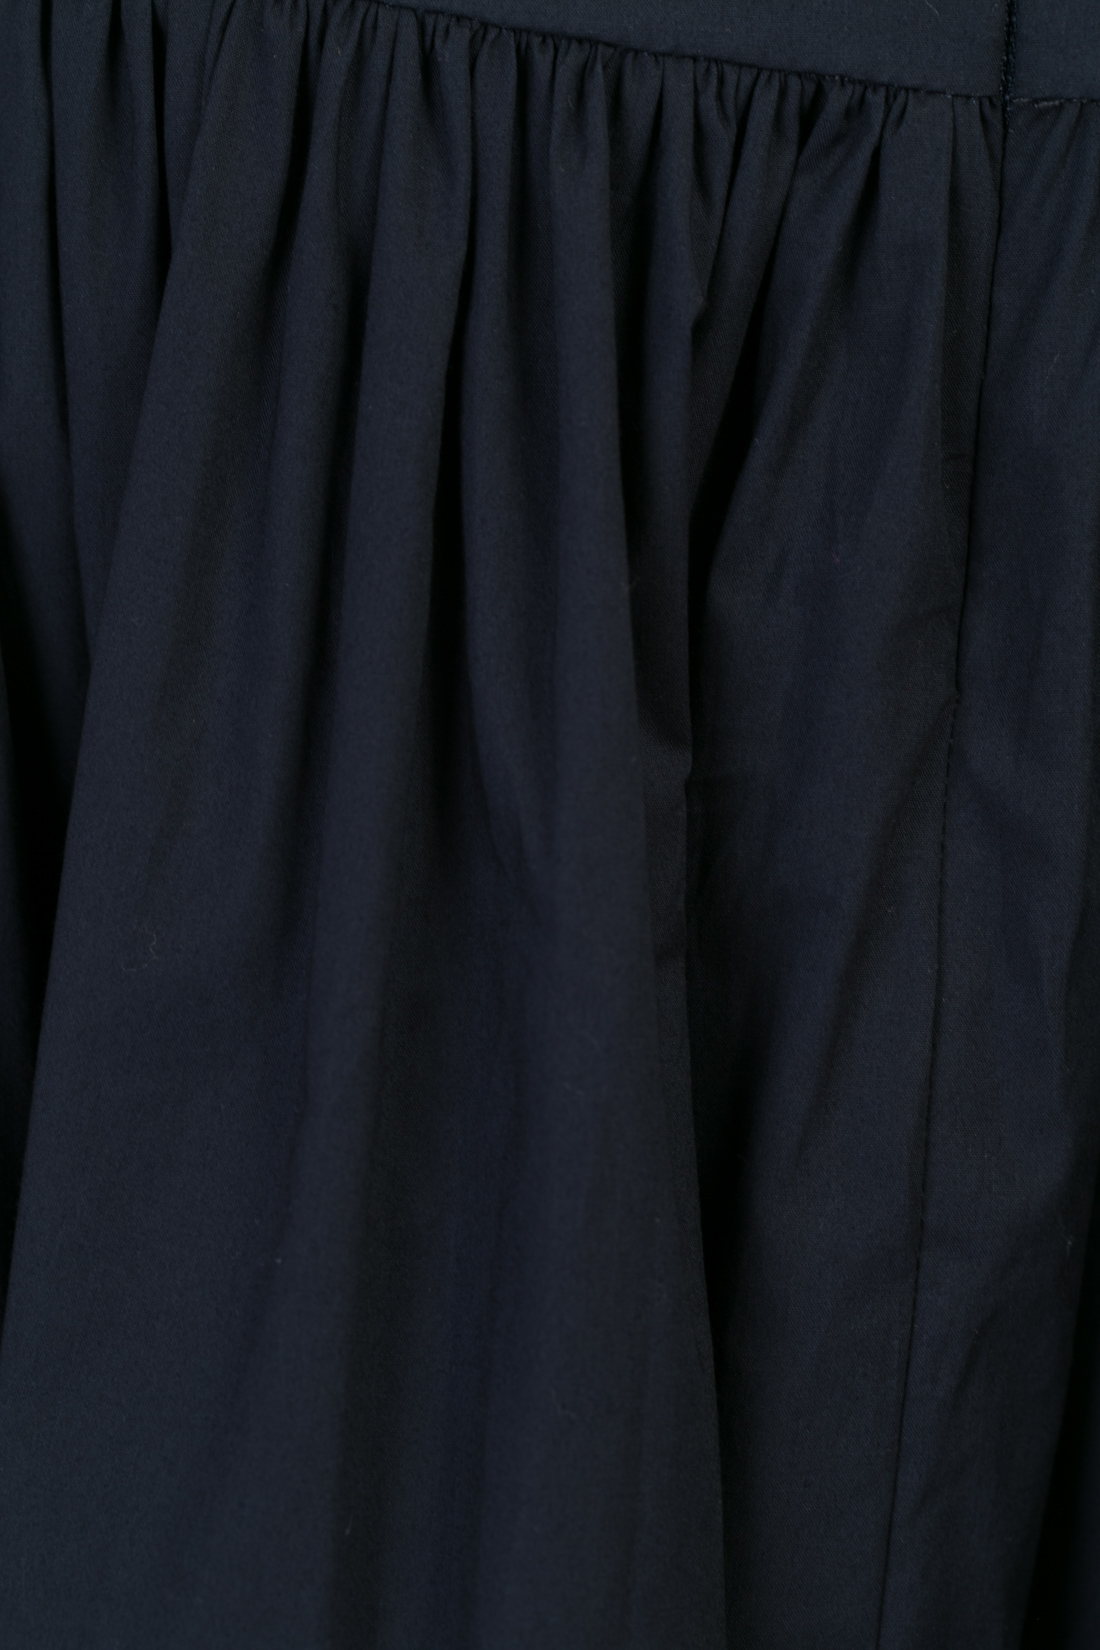 Длинная юбка с кокеткой (арт. baon B477022), размер L, цвет синий Длинная юбка с кокеткой (арт. baon B477022) - фото 3